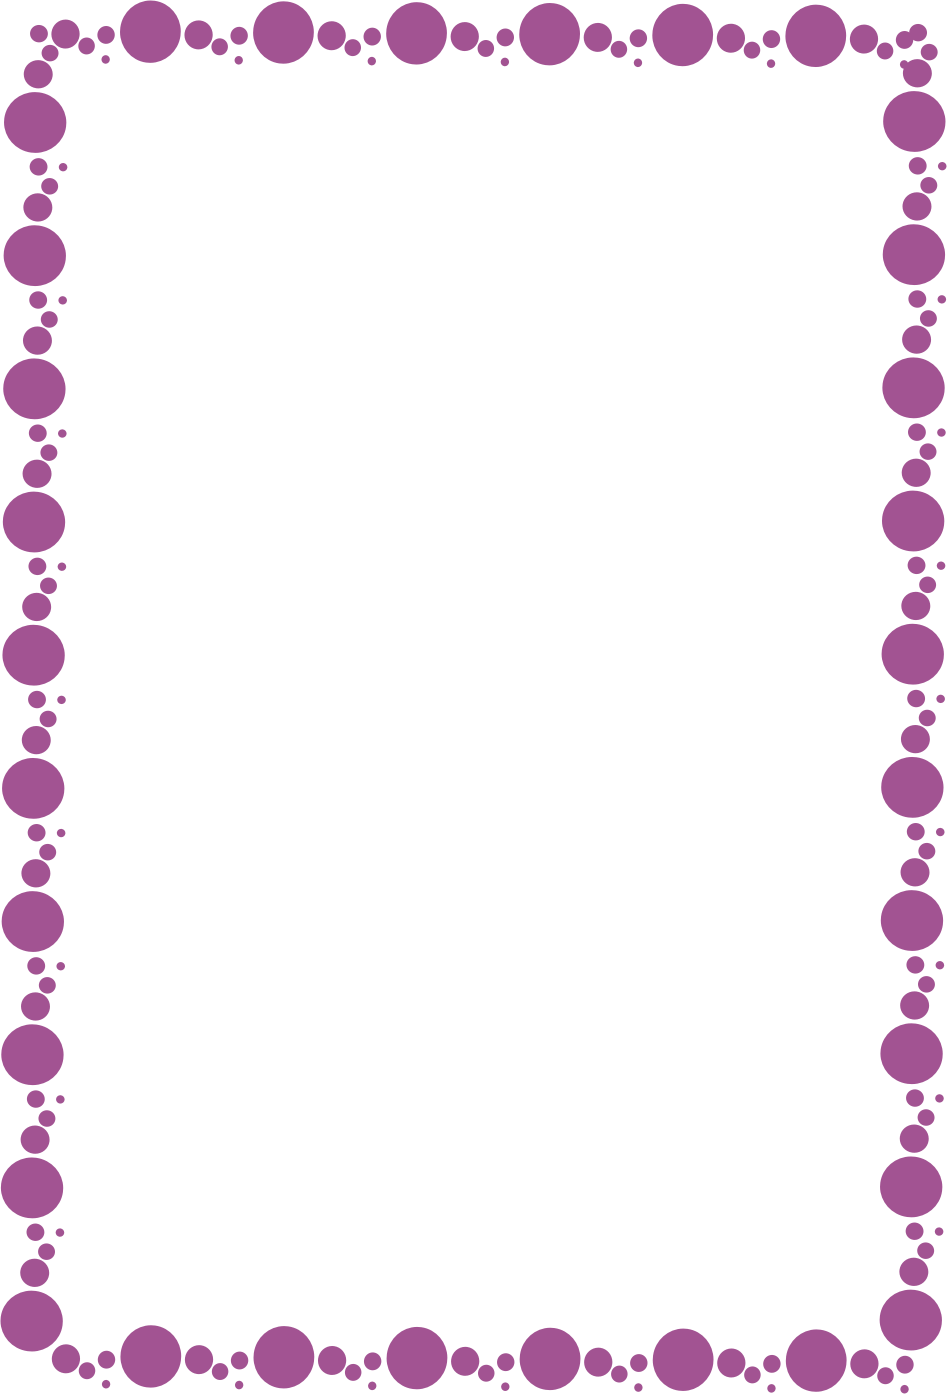 CARATULAS ESCOLARES: Caratula de Puntitos Color Violeta